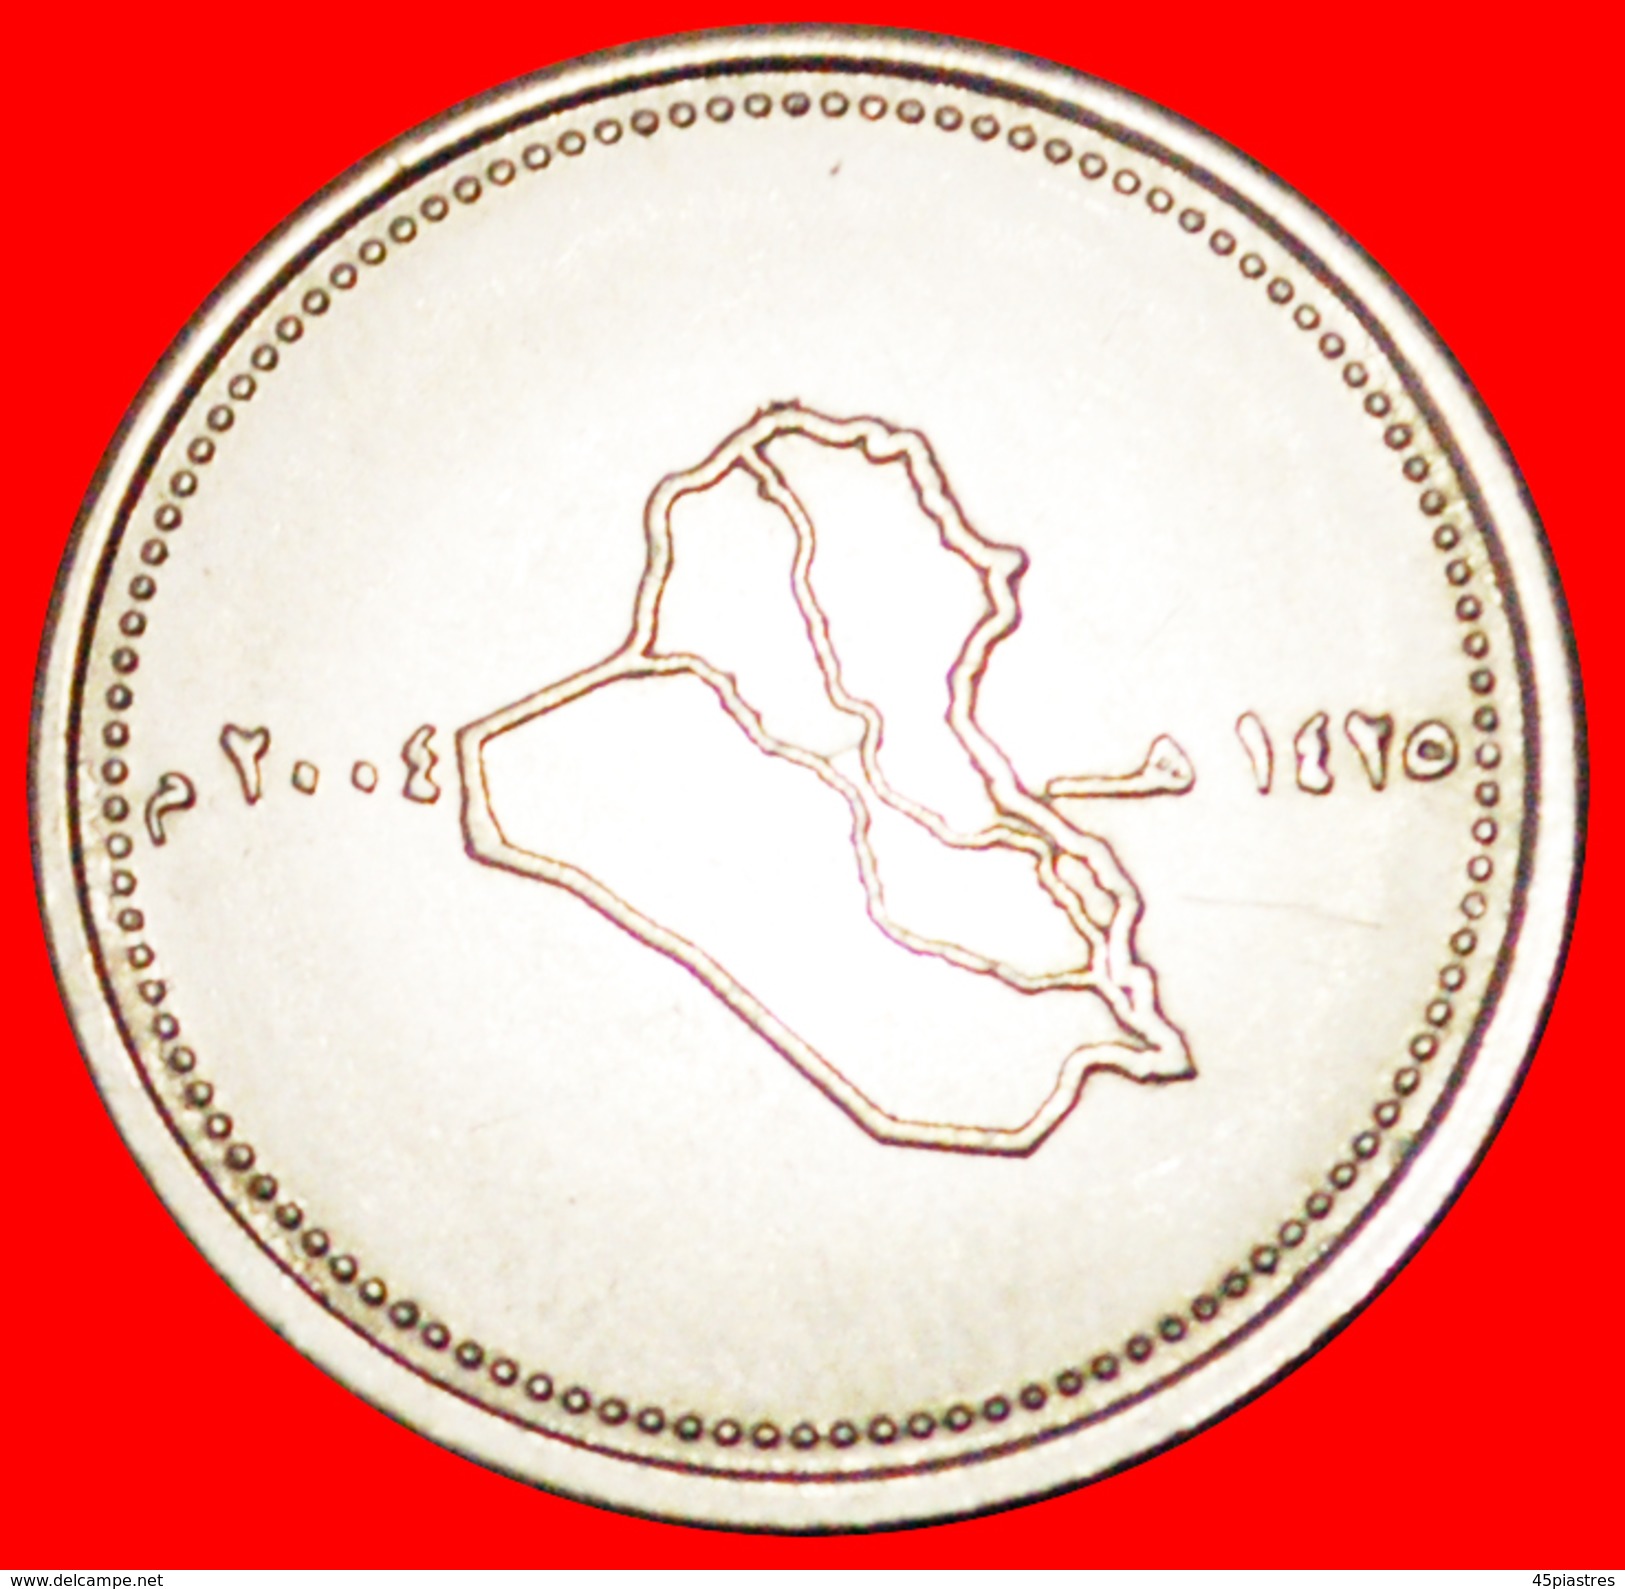 § MAP: IRAQ &#x2605; 100 FILS 1425-2004 MINT LUSTER! LOW START&#x2605; NO RESERVE! - Iraq